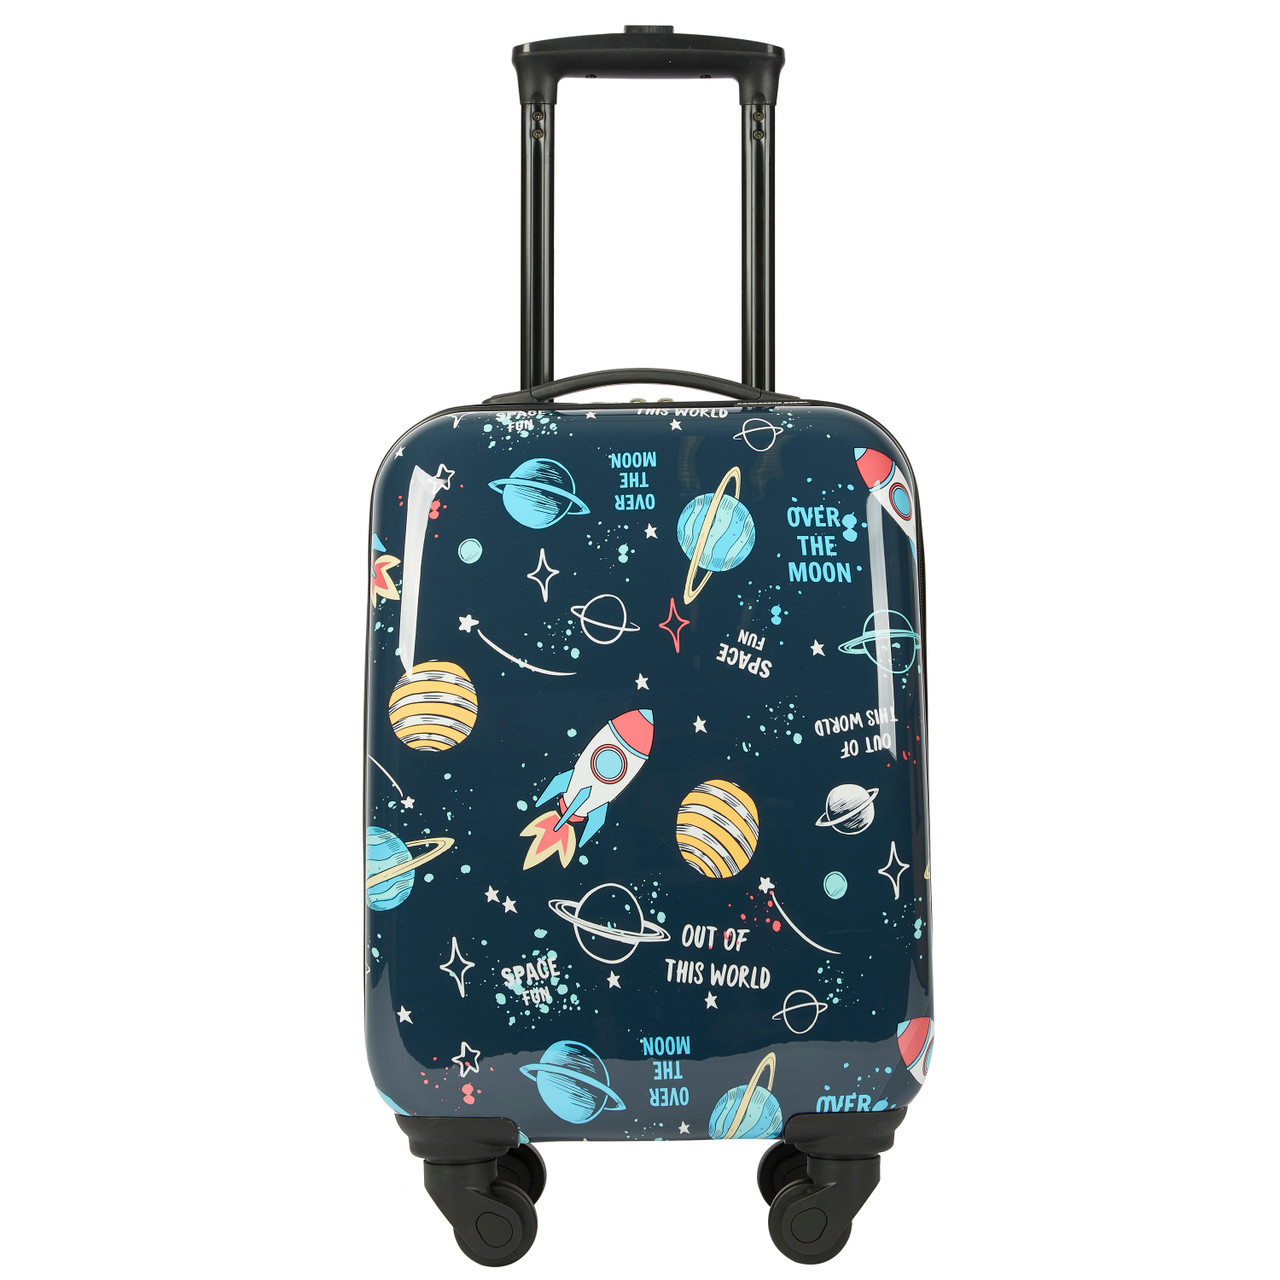 Space Boy Luggage Set